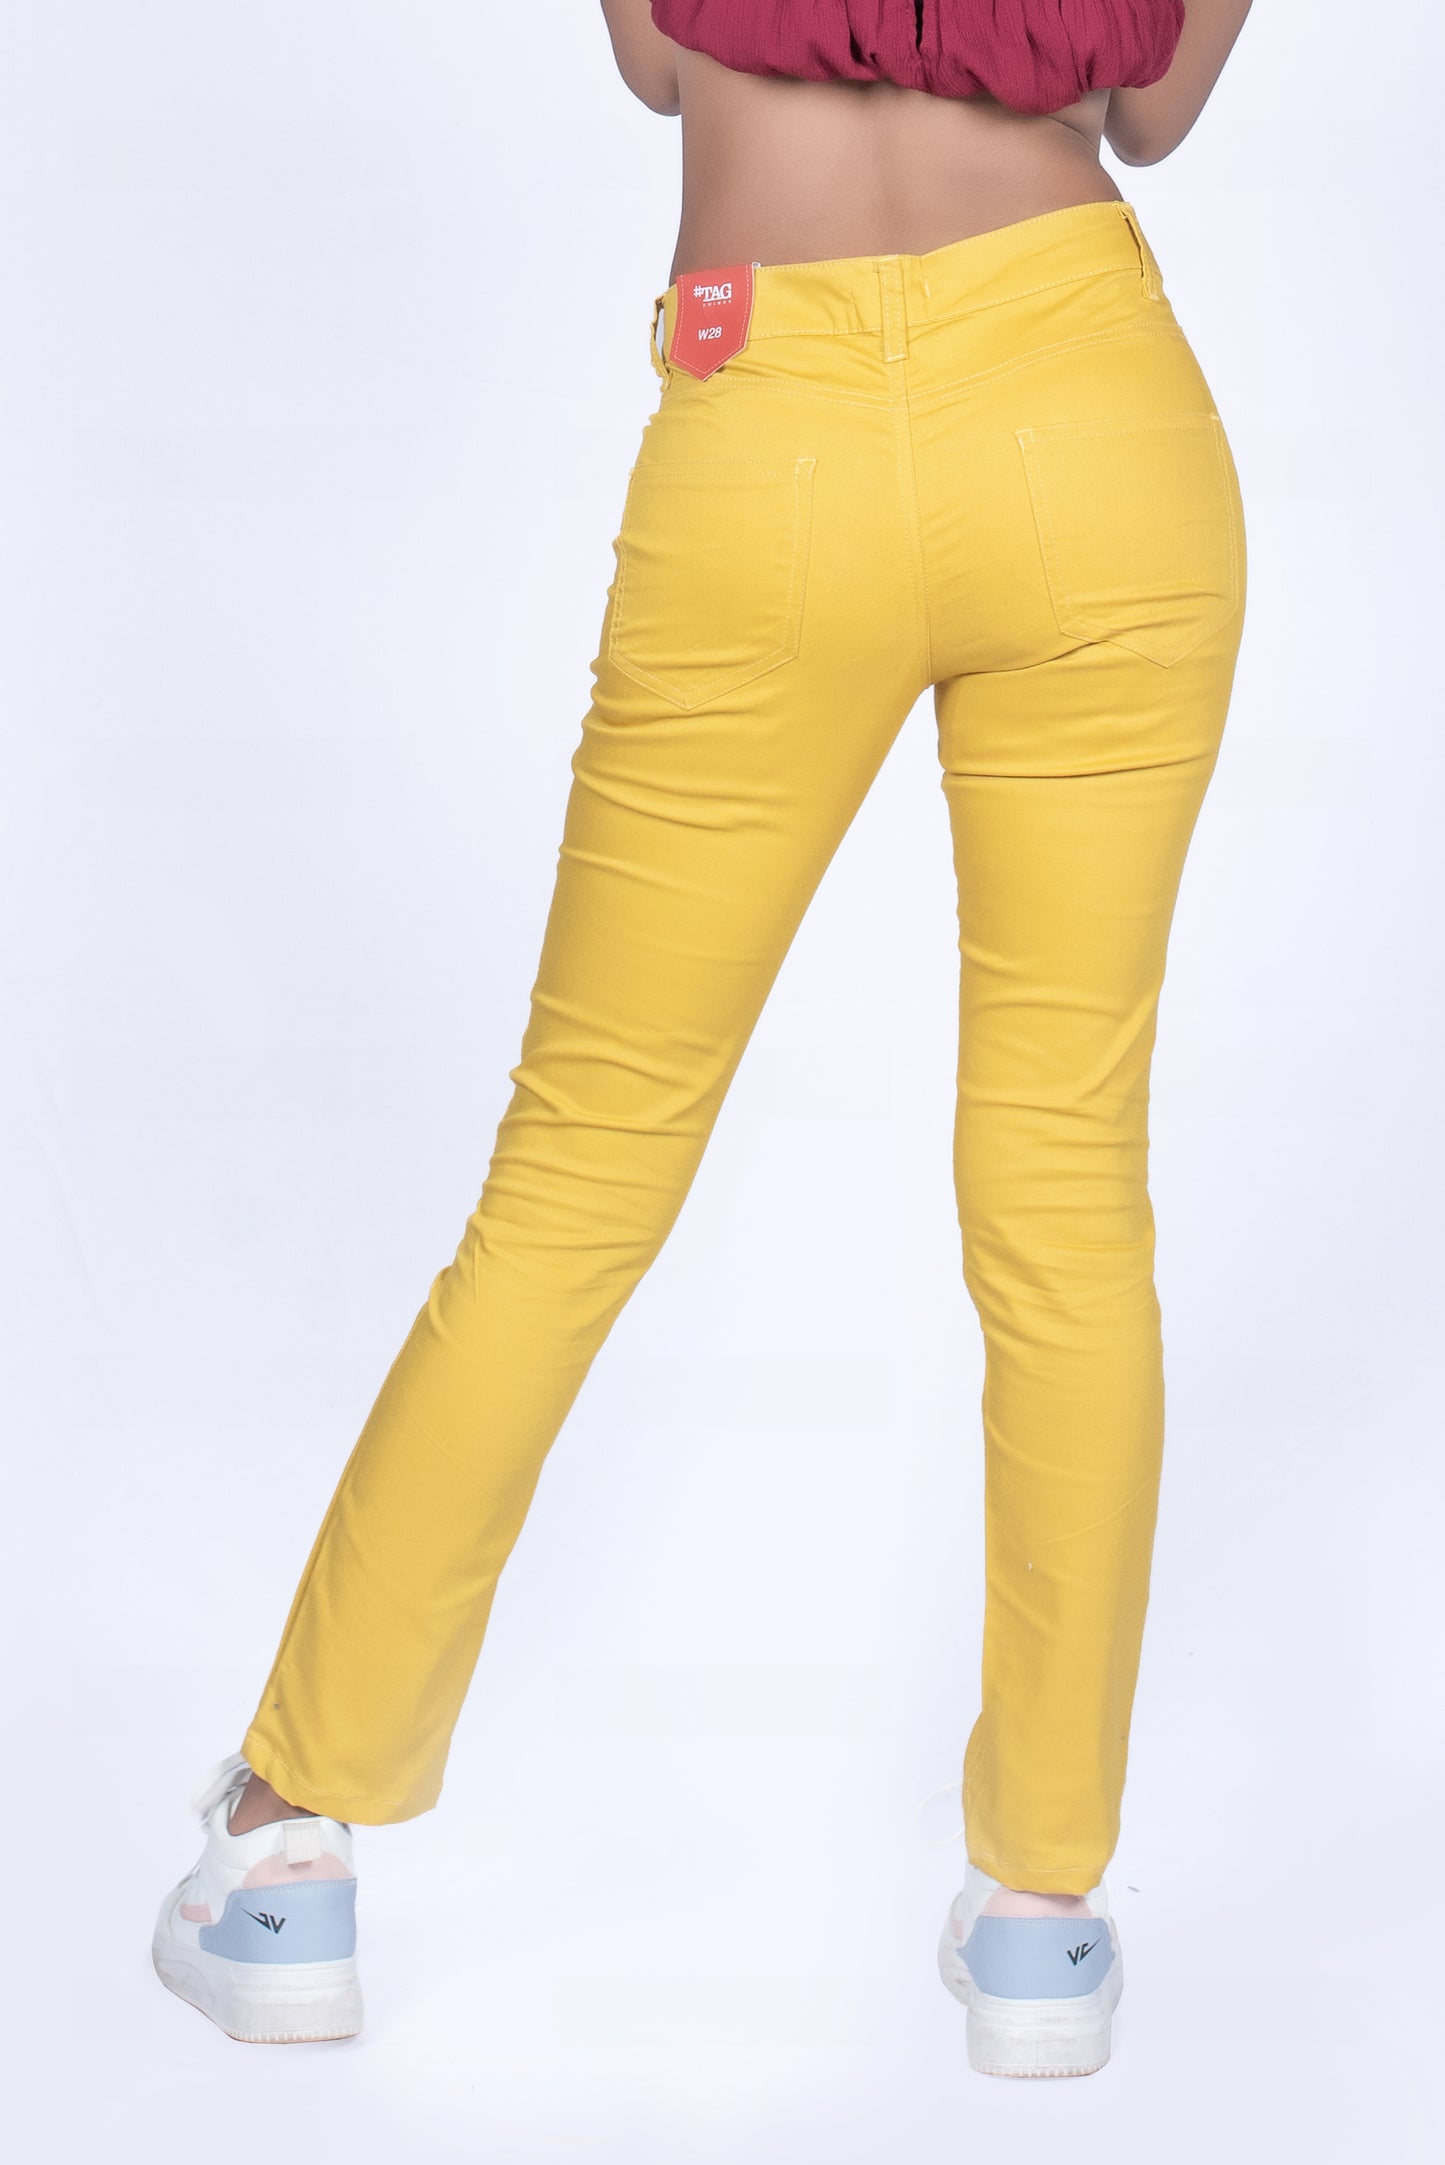 Ladies Chino Pant - Sunflower Yellow